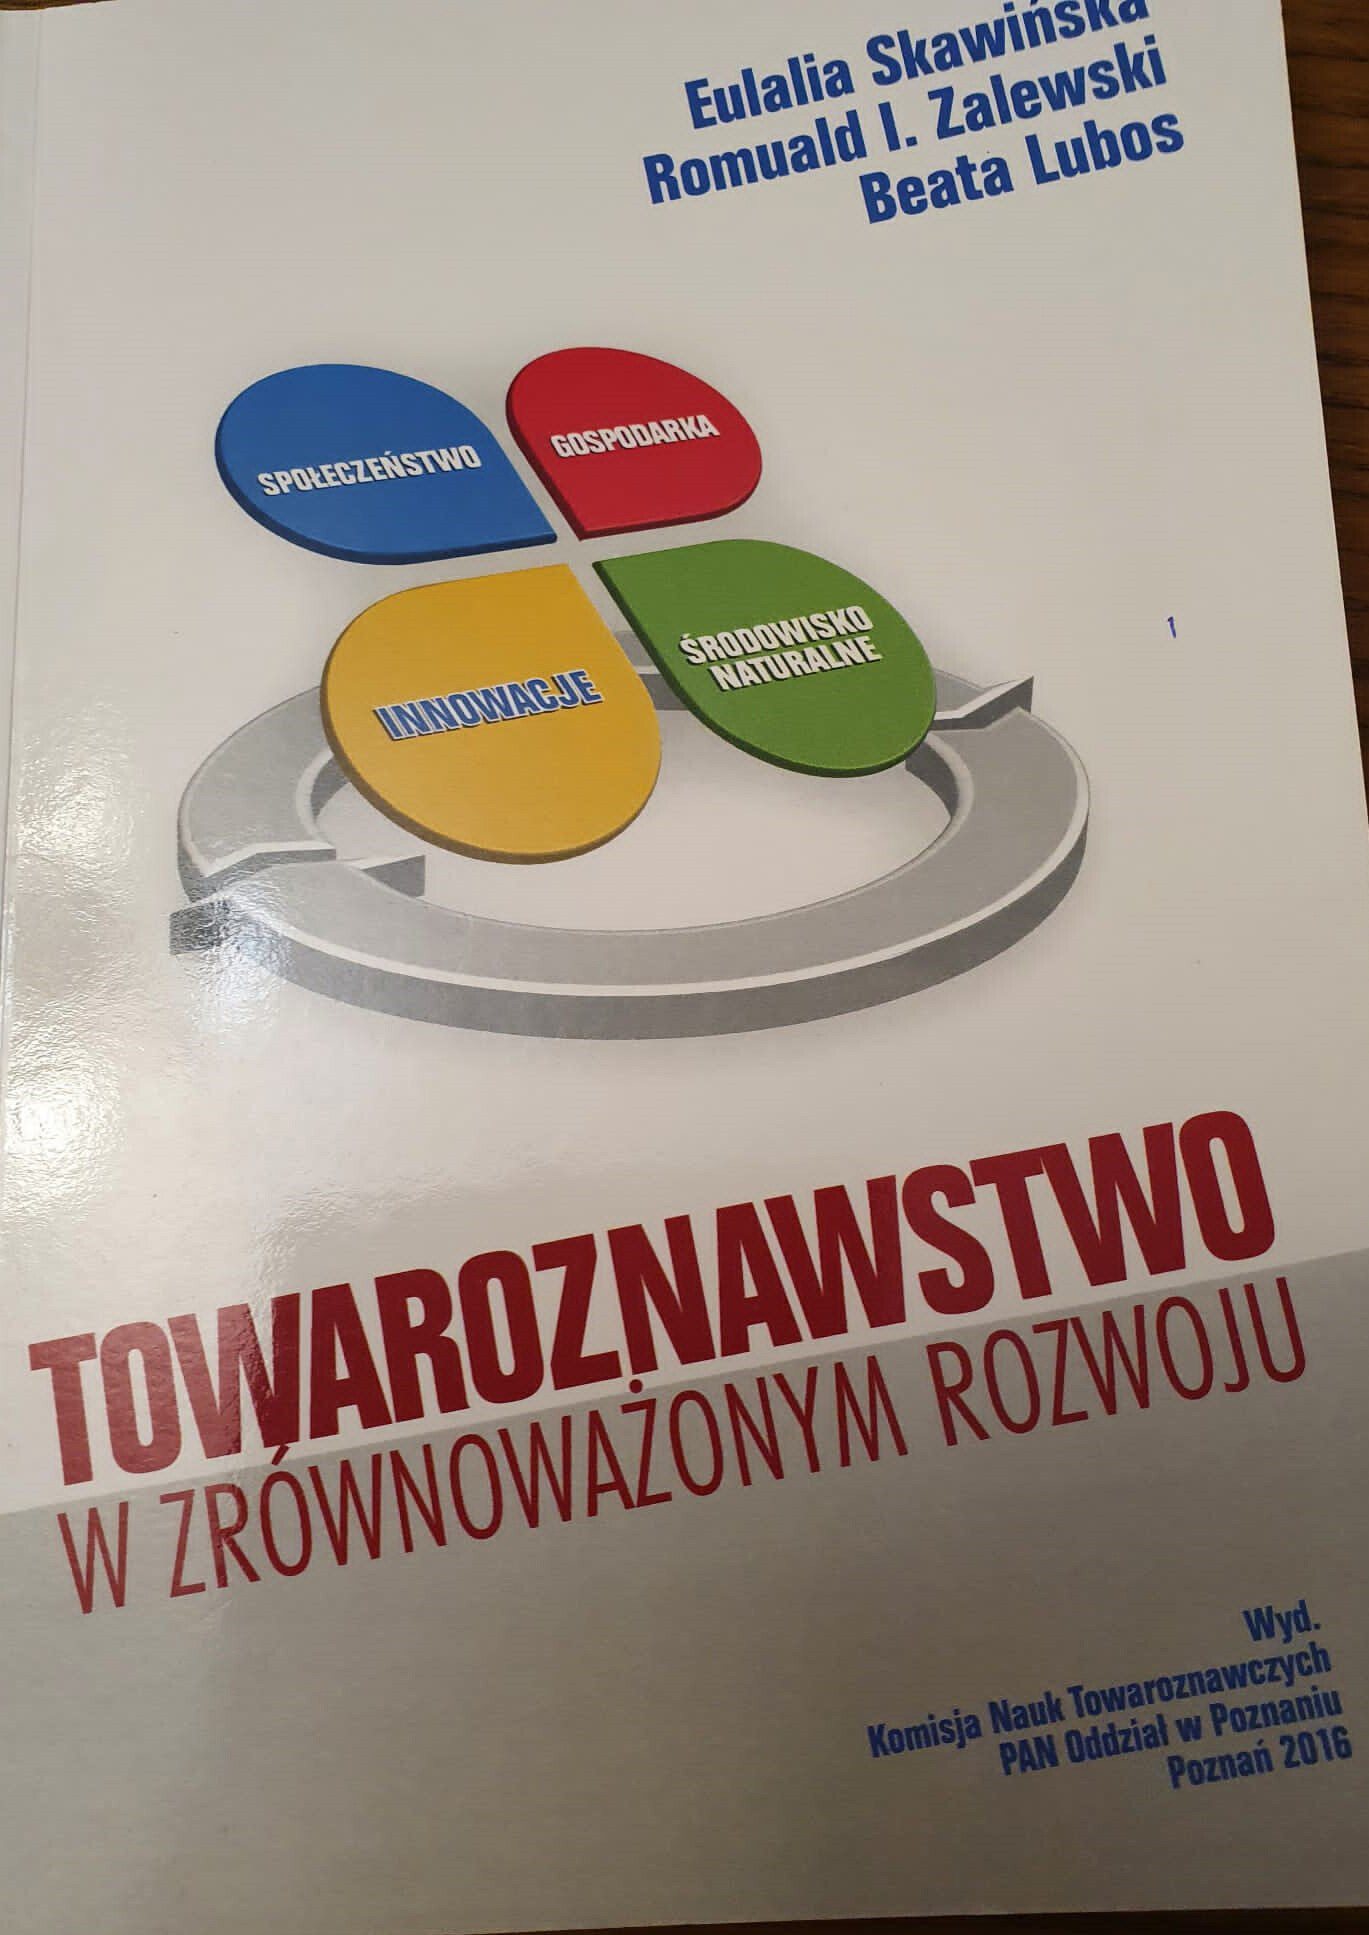 Eulalia-Skawińska - Towaroznawstwo w zrownowazonym rozwoju innowacje zrownowazone w teorii i dzialalnosci innowacyjnej przedsiebiorstw w polsce.jpg